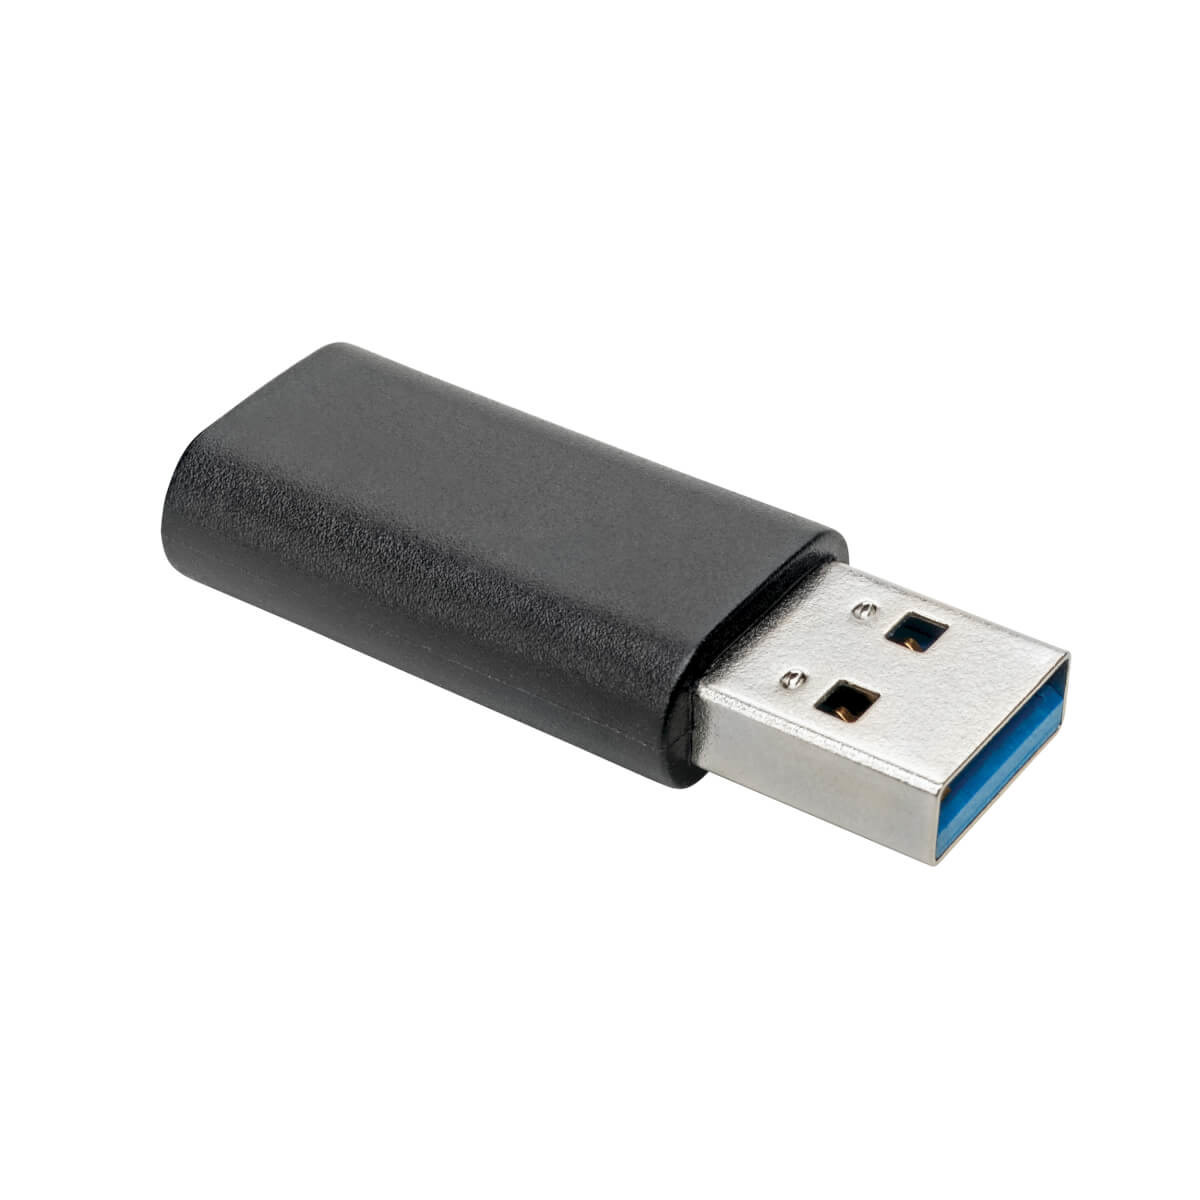 USB 3.0 Adapter USB-A to USB C M/F USB-C